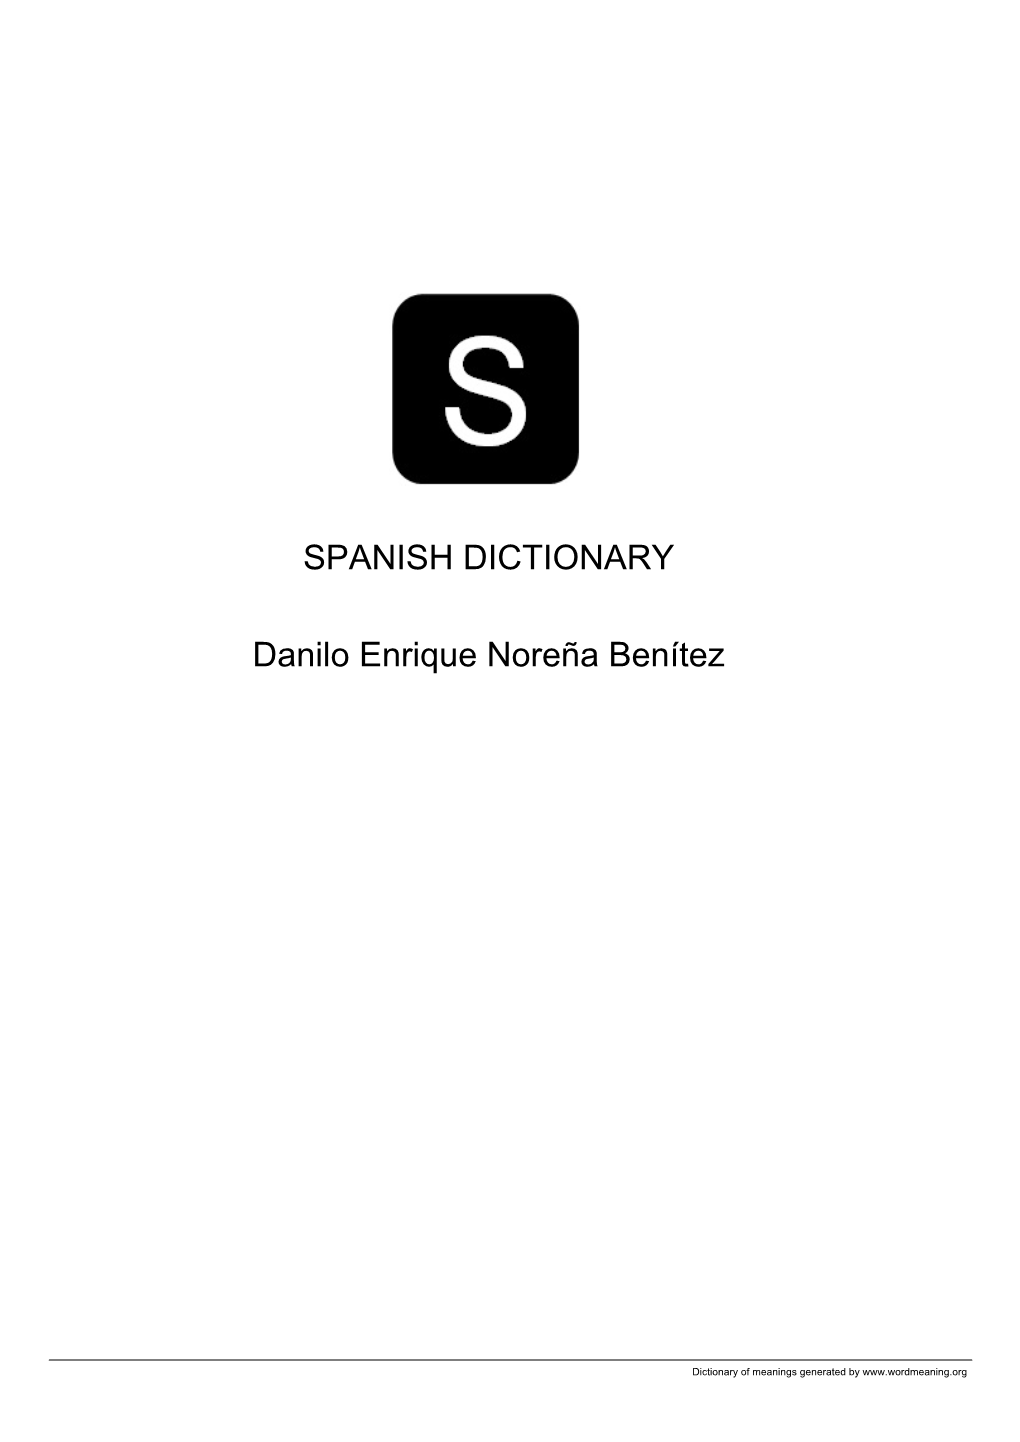 Spanish Open Dictionary by Danilo Enrique Noreña Benítez VOL7